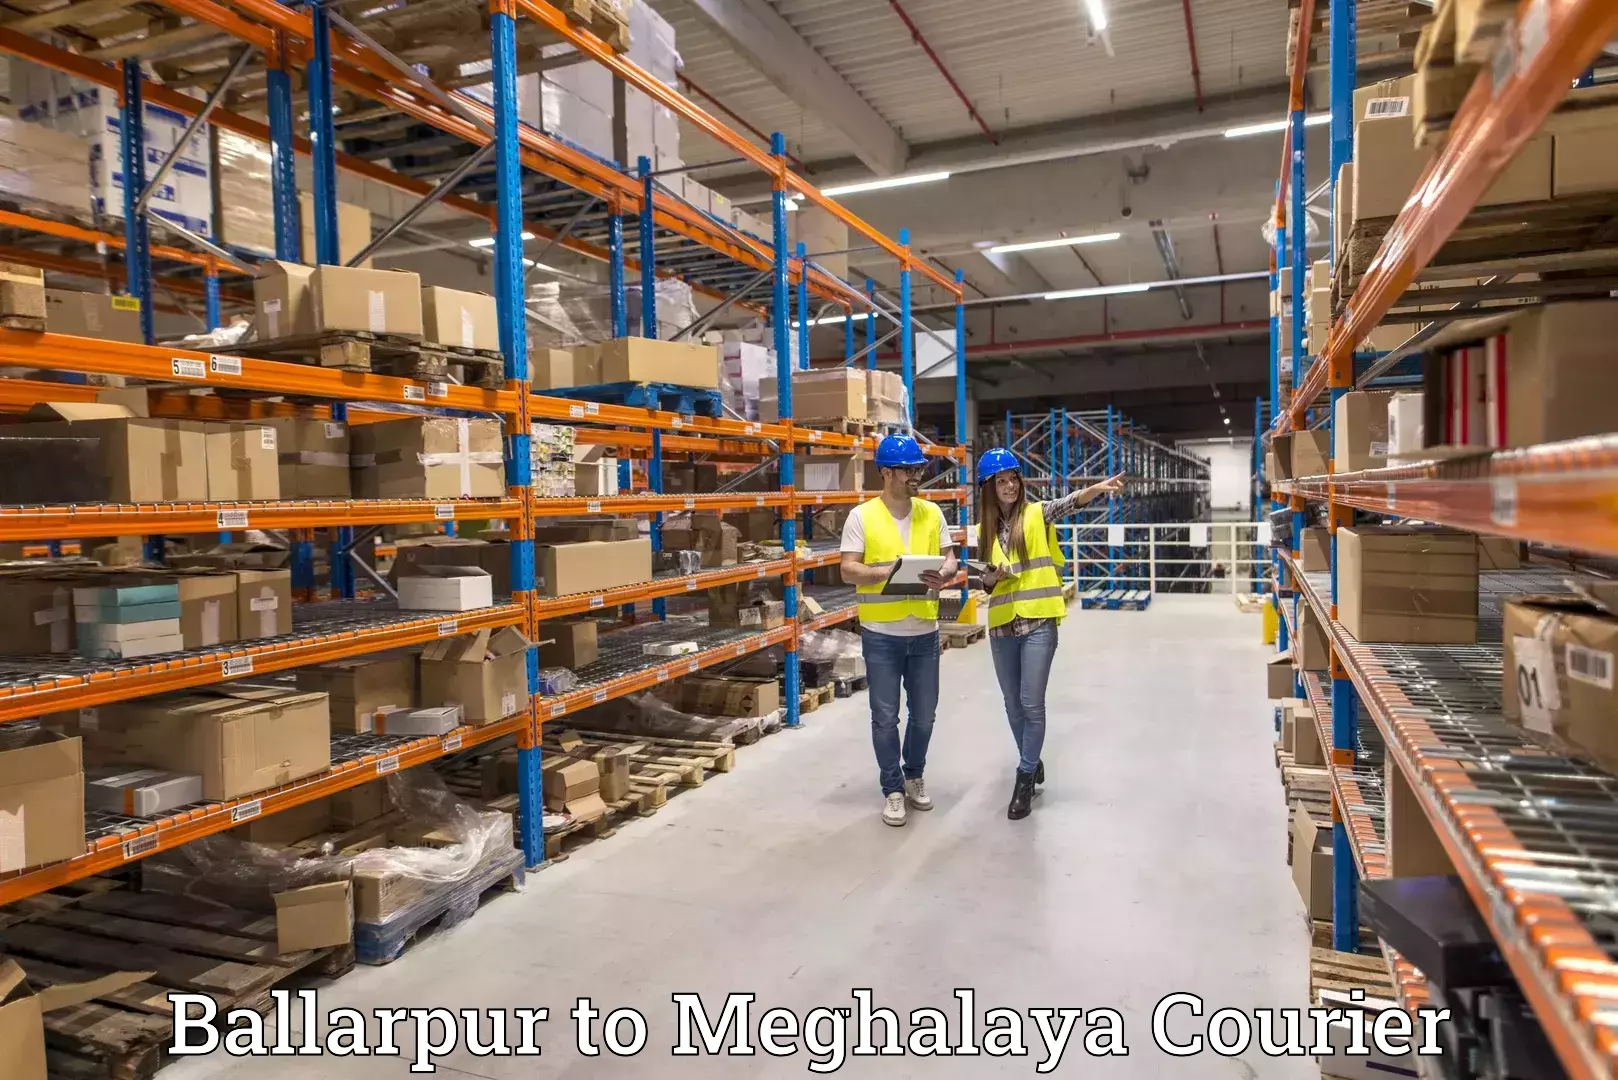 Global freight services Ballarpur to Shillong